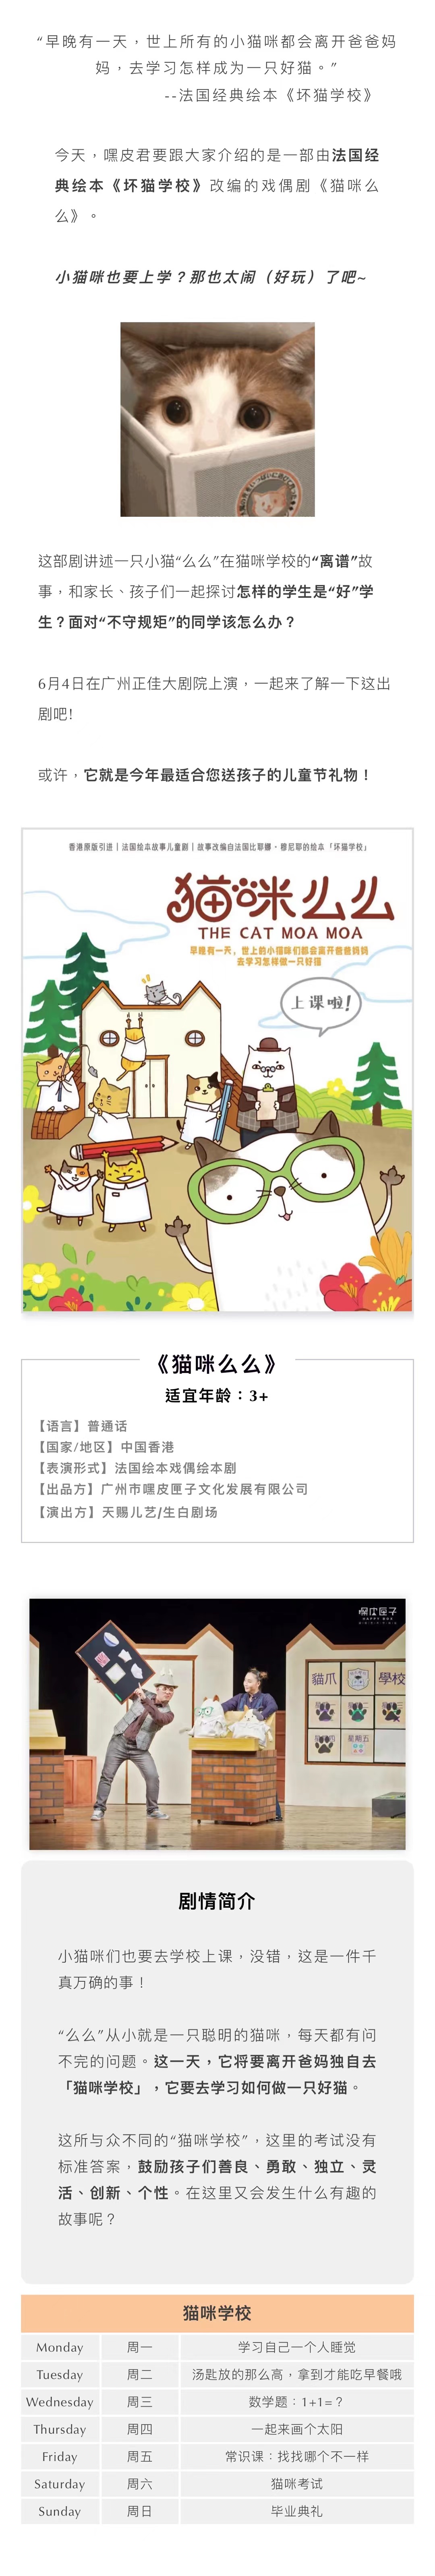 2022【嘿皮匣子】法国绘本戏偶剧《猫咪么么》-广州站